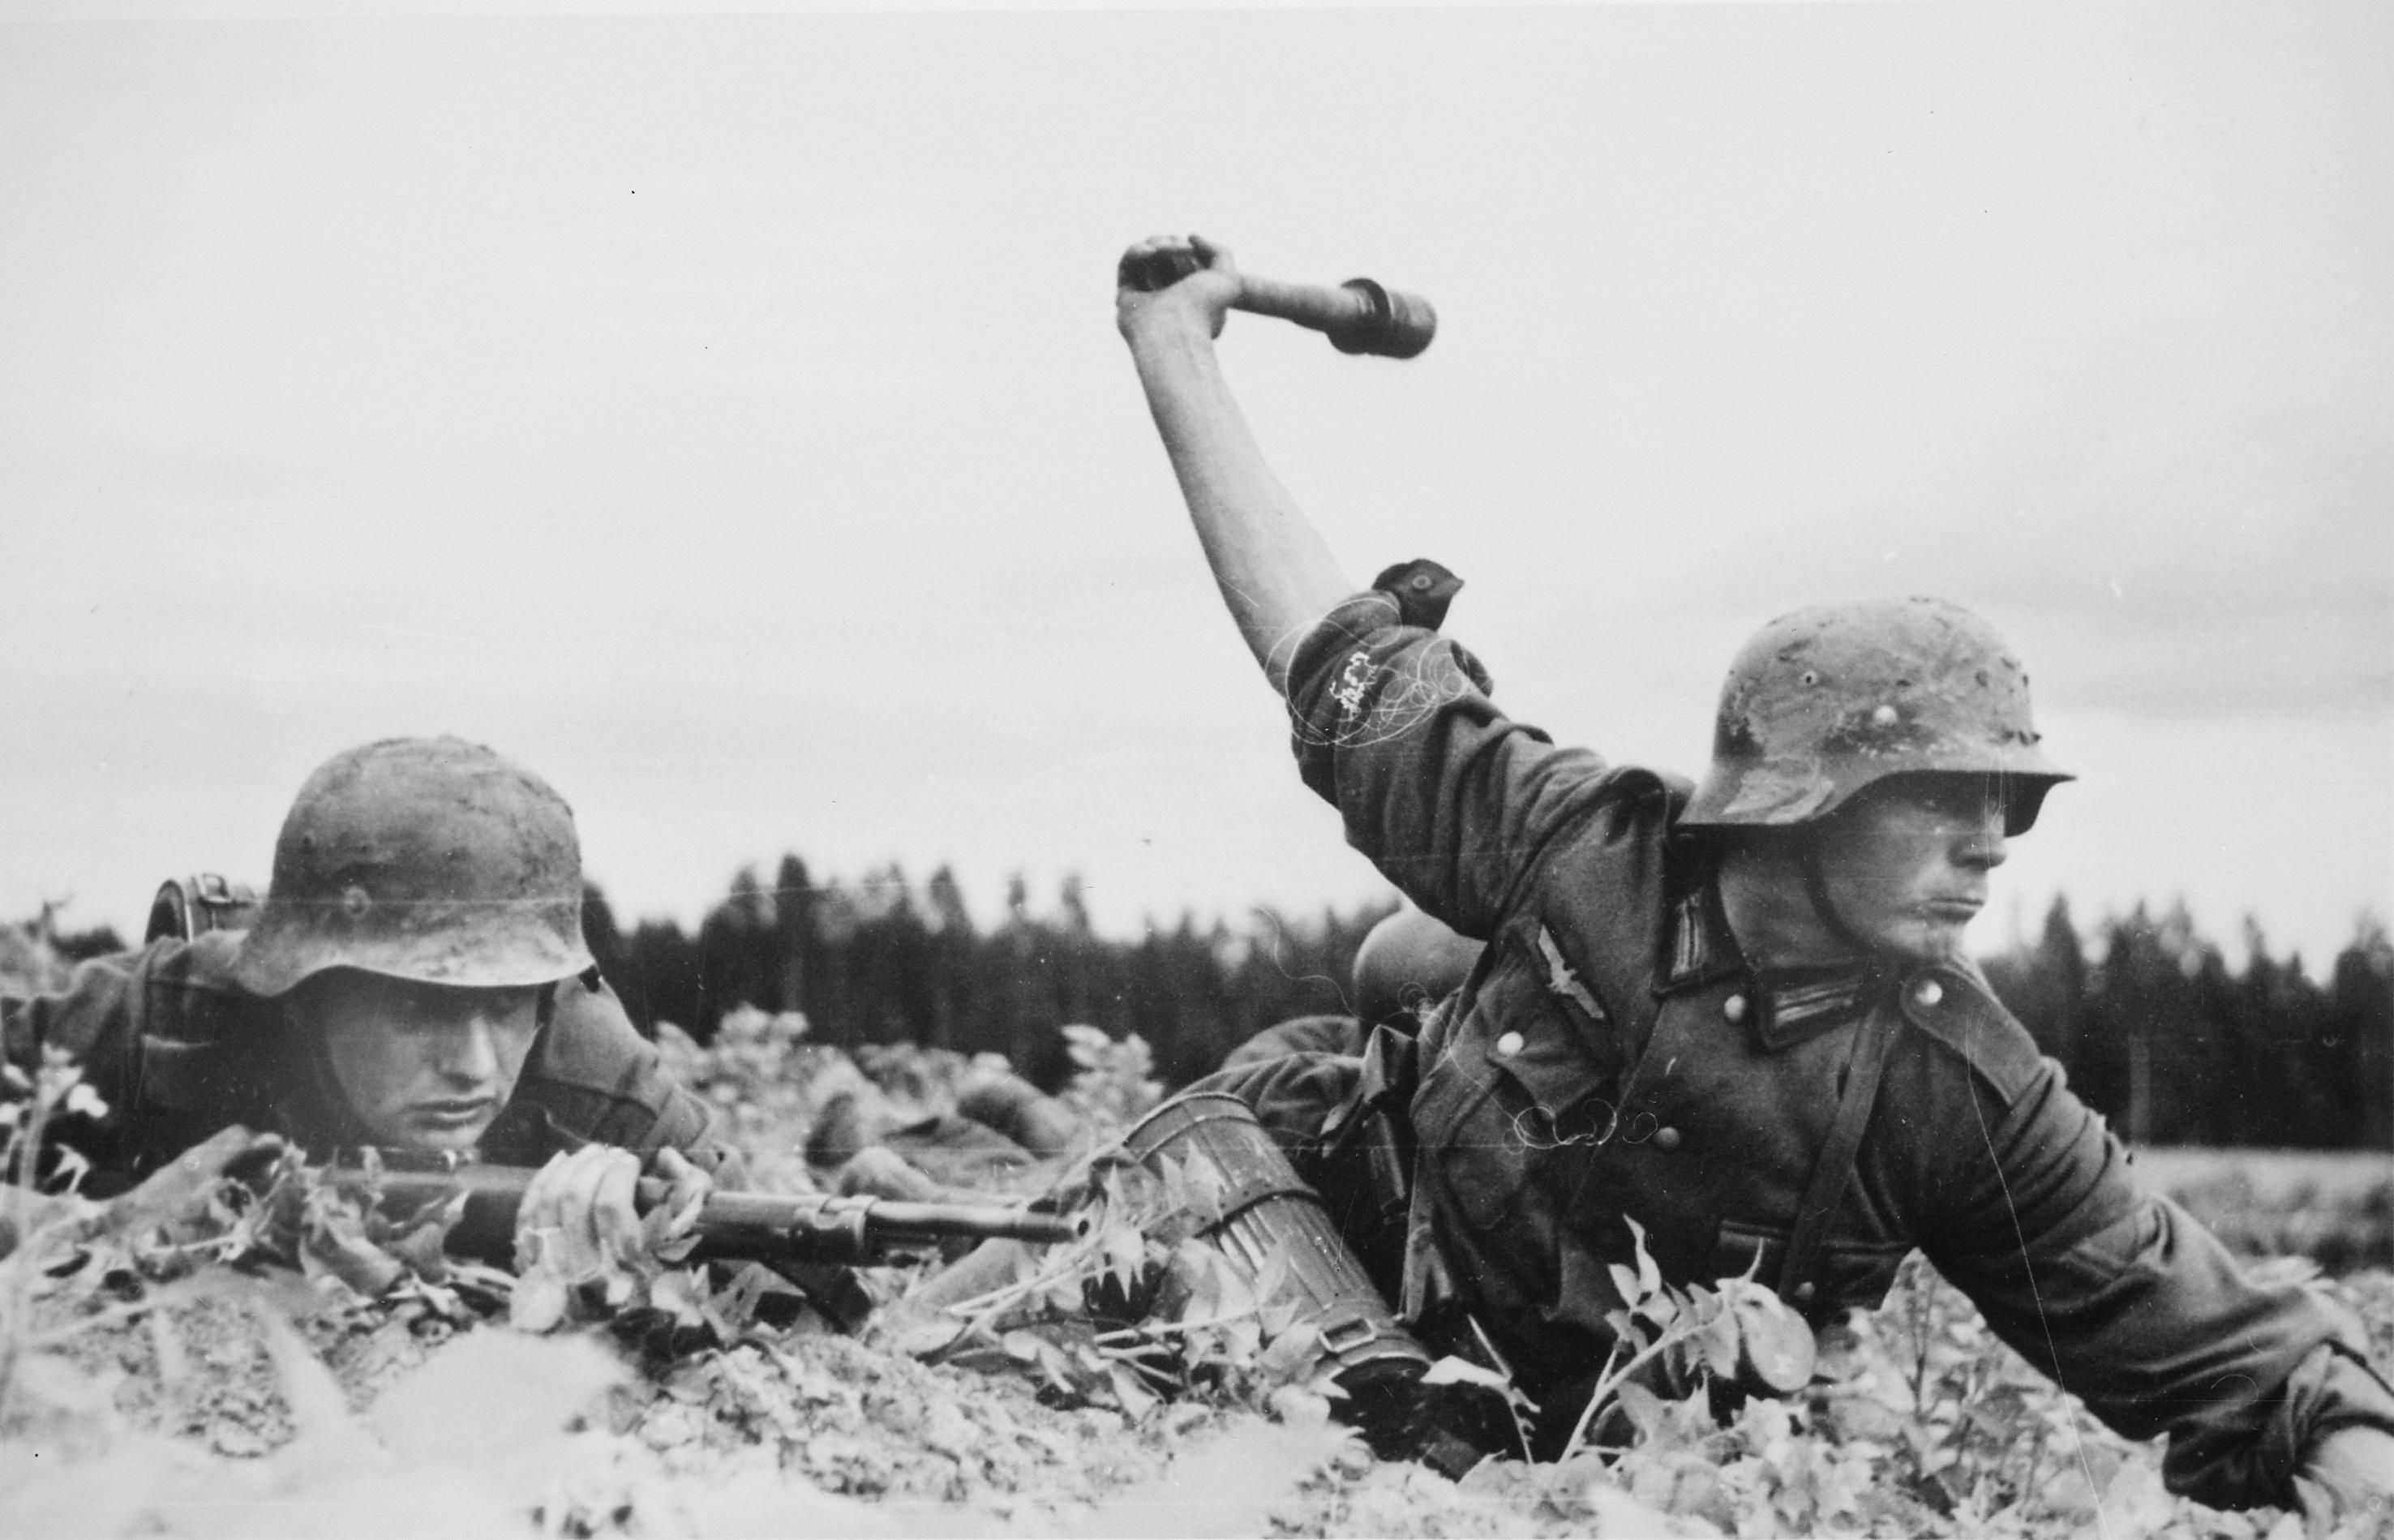 "Герої" німецької армії: де починається Бундесвер і закінчується Вермахт?